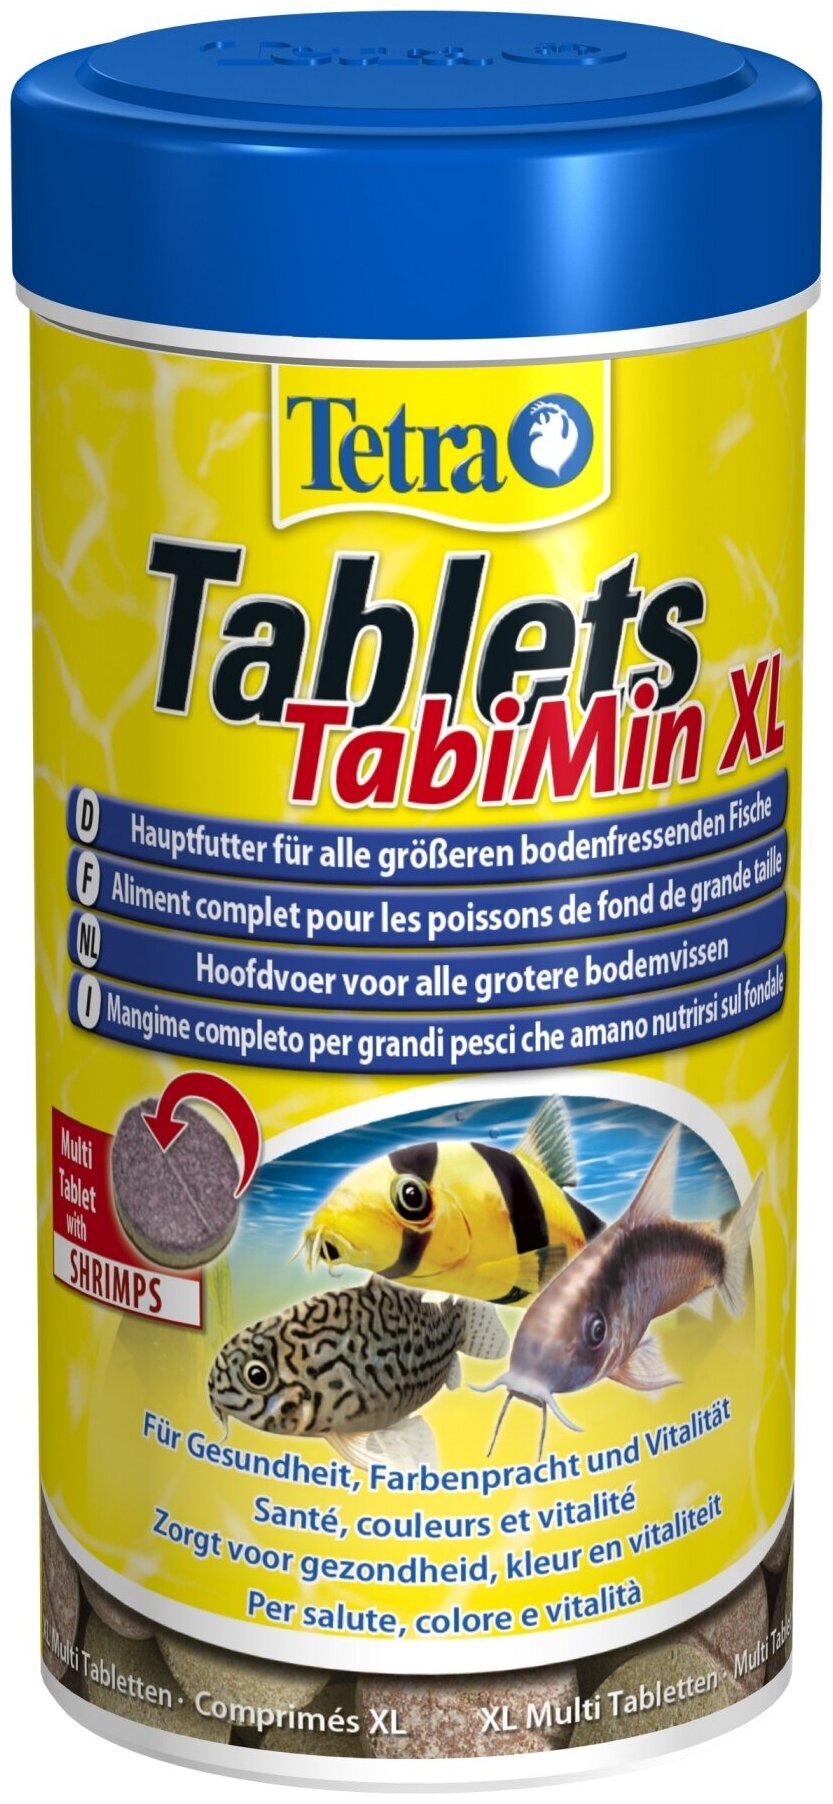 Tetra TabletsTabiMin XL корм для всех видов донных рыб в виде крупных двухцветных таблеток, 133 таб.